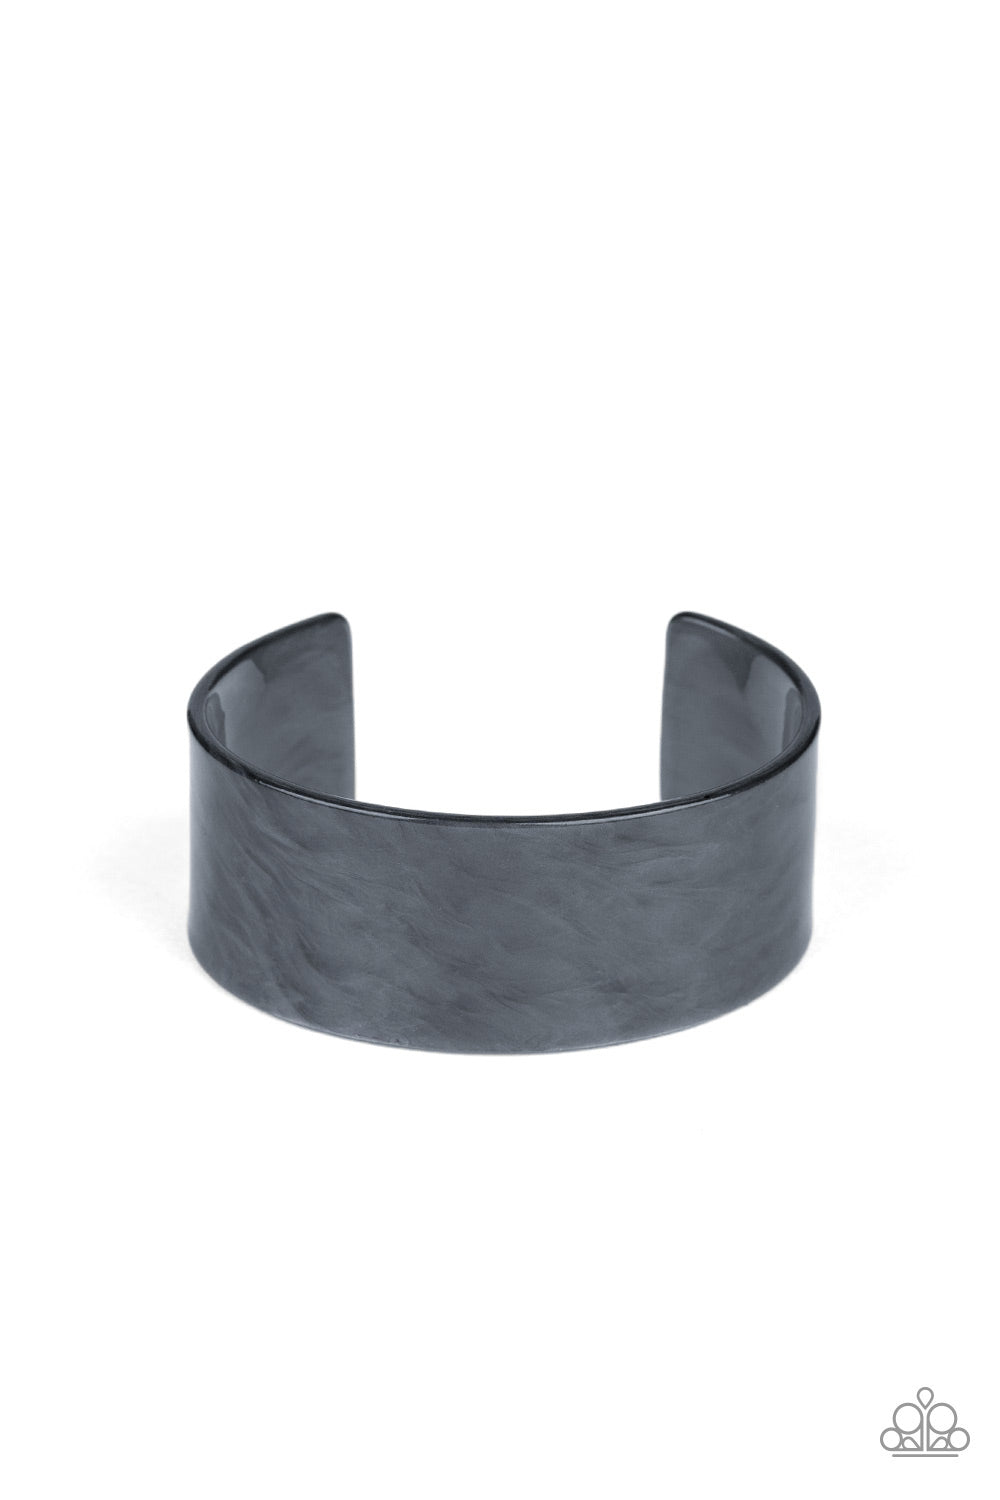 Glaze Over - Silver Cuff Bracelet